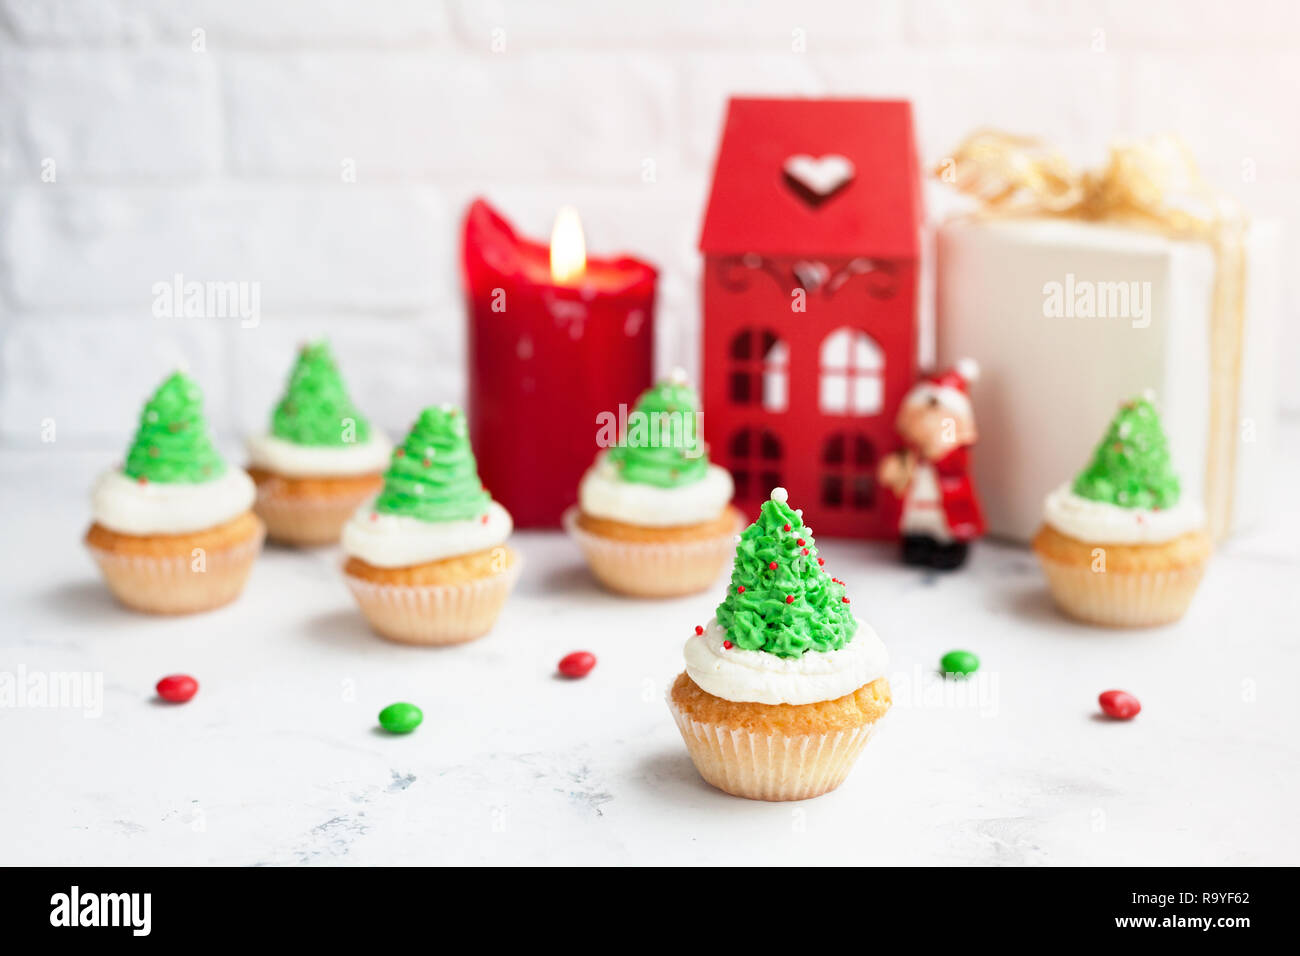 Arbre vert cupcakes près de red house, bougie et présente à l'époque de Noël Banque D'Images